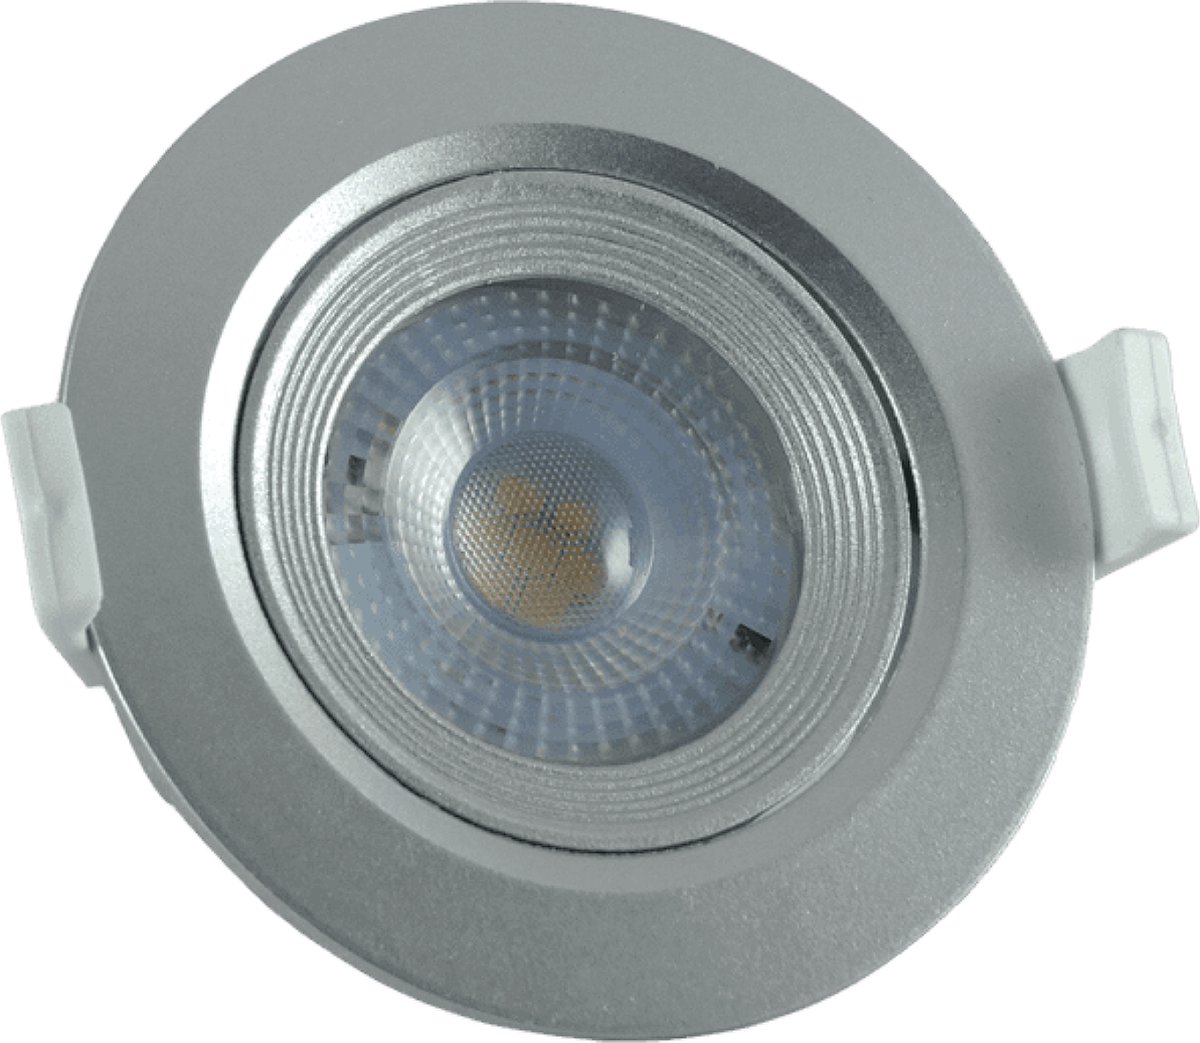 TrixLine Ronde Kantelbaar - Ø90mm - Zilver Inbouwspot - 7W (50W) - Koel Wit Licht - Niet Dimbaar